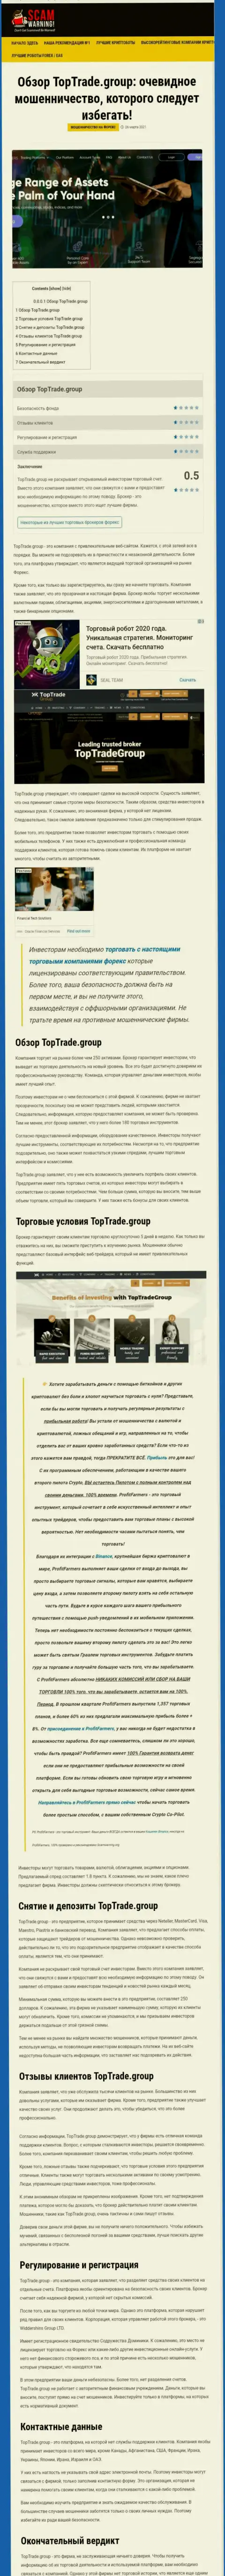 Статья с обзором противозаконных уловок TopTrade Group, нацеленных на лохотрон клиентов